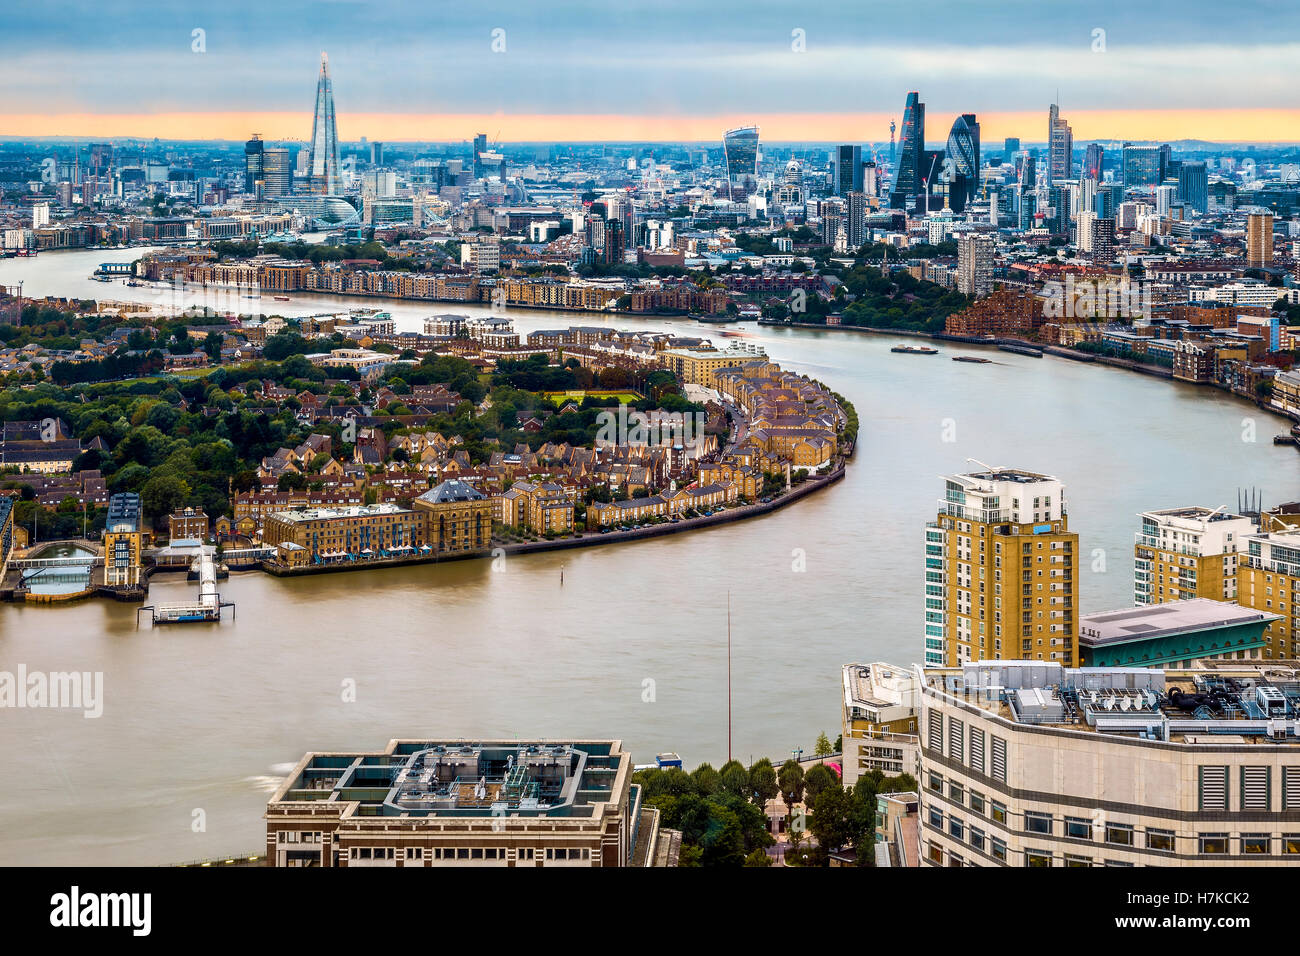 Ville de Londres au cours de la journée, vue aérienne de repères Banque D'Images